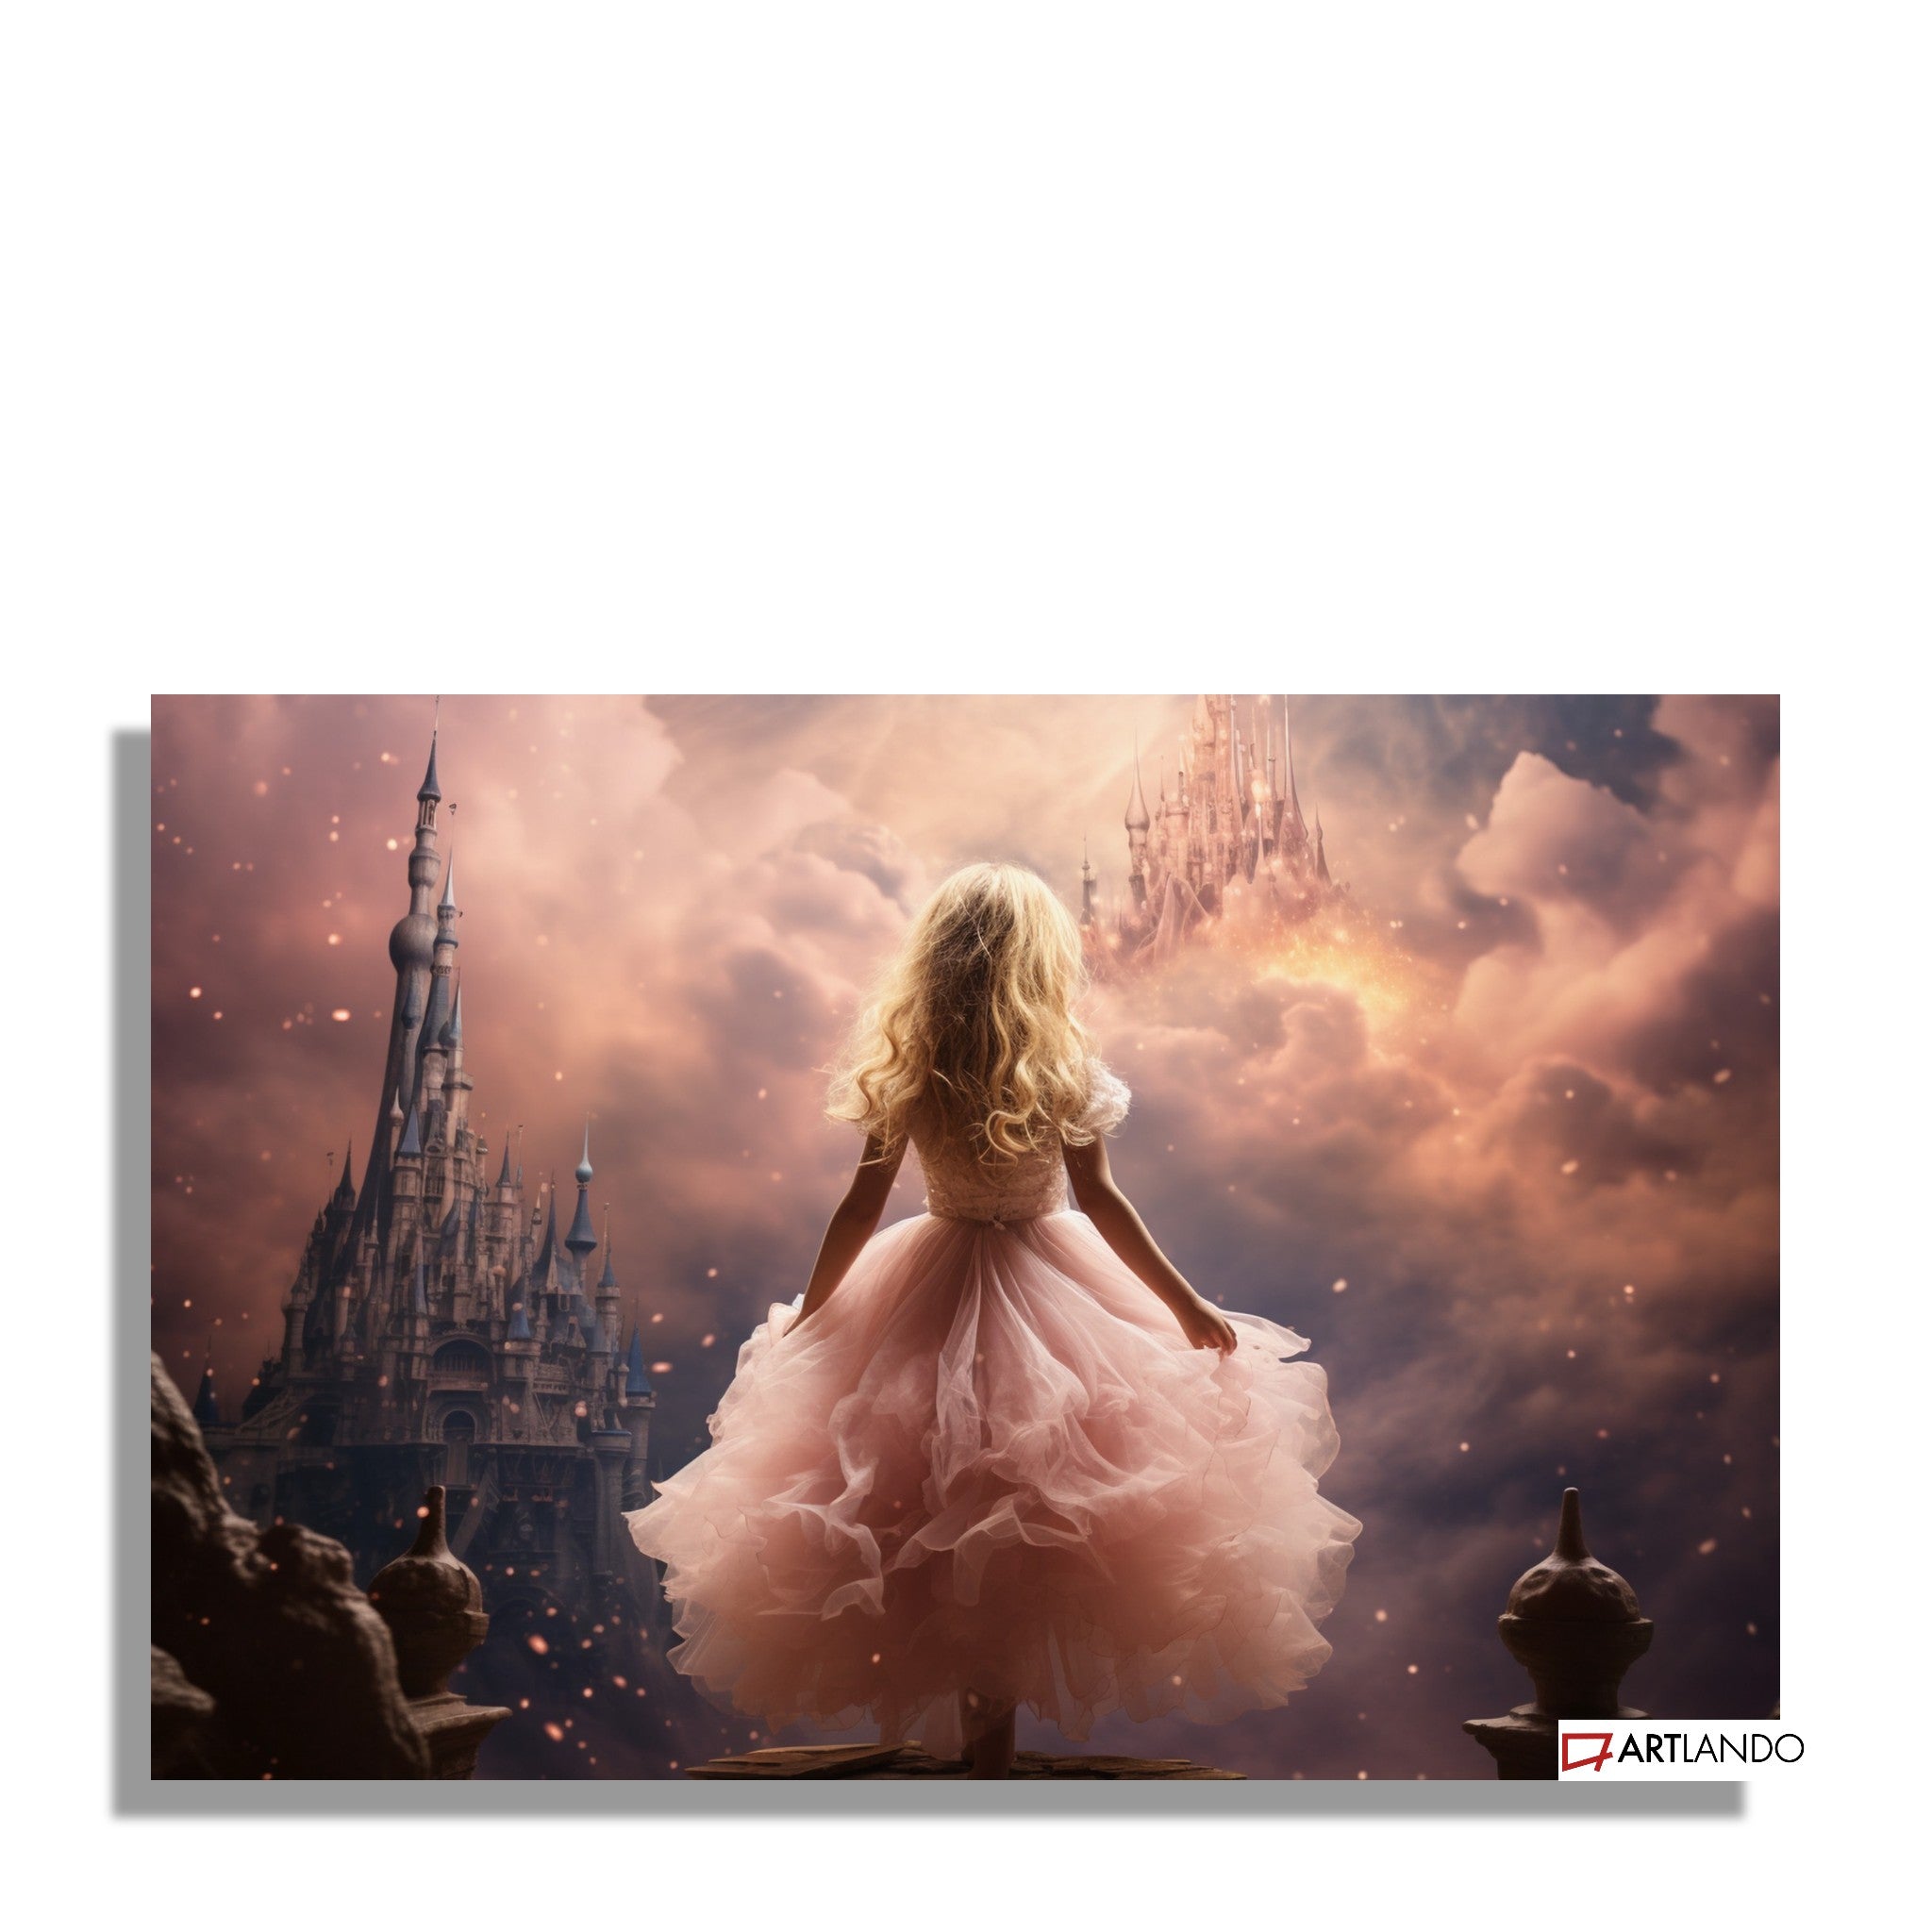 Prinzessin im pinken Kleid umgeben von magischen Schlössern